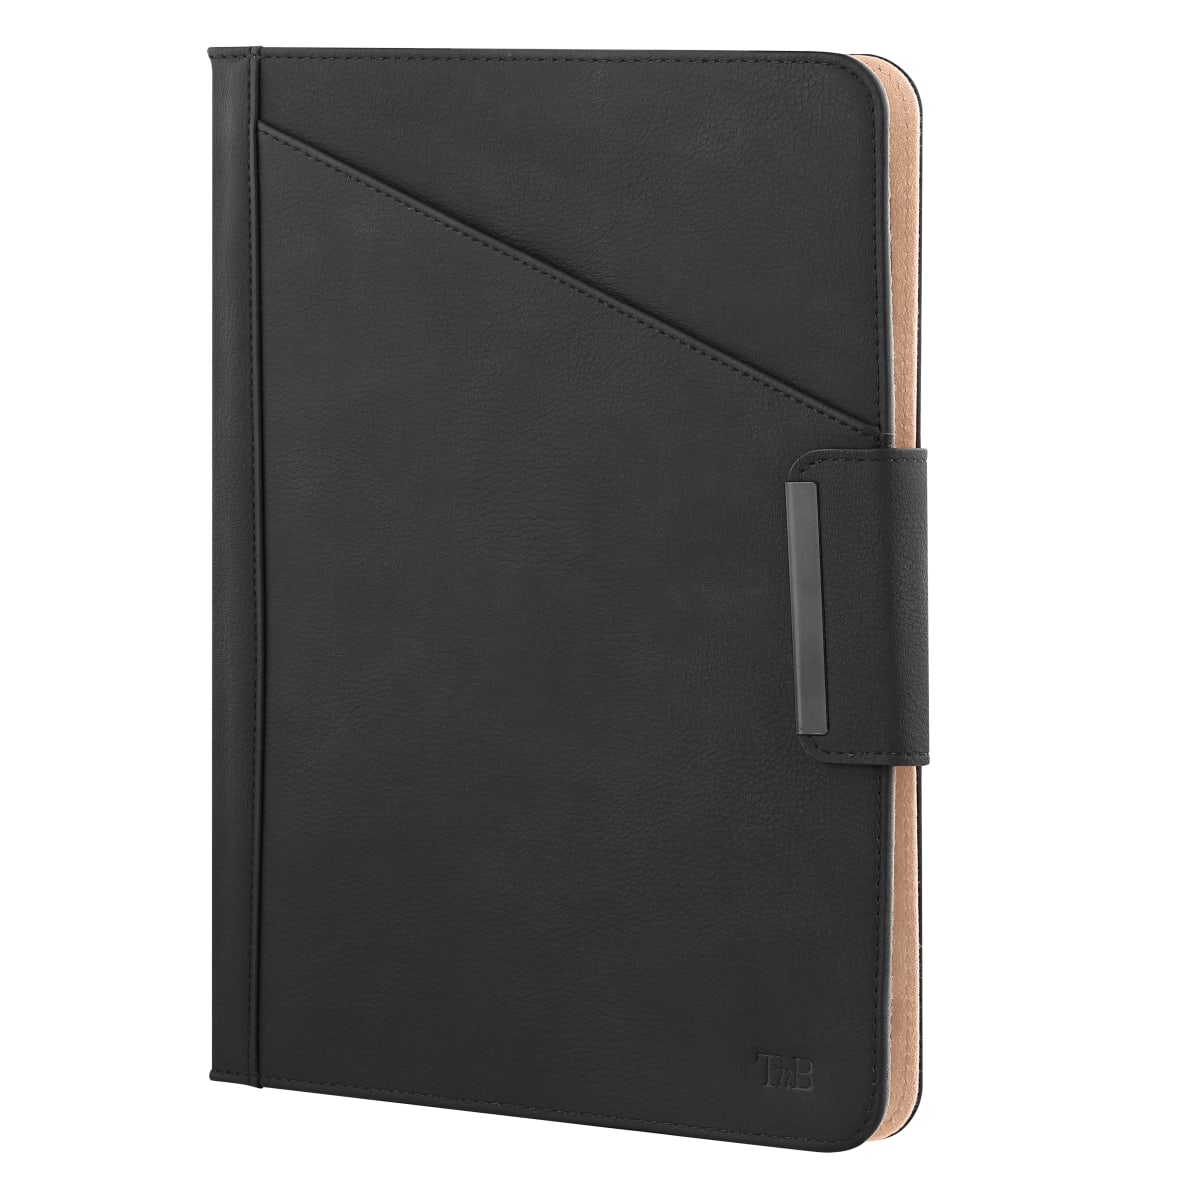 Universal folio case for tablet 10" PREMIUM black
